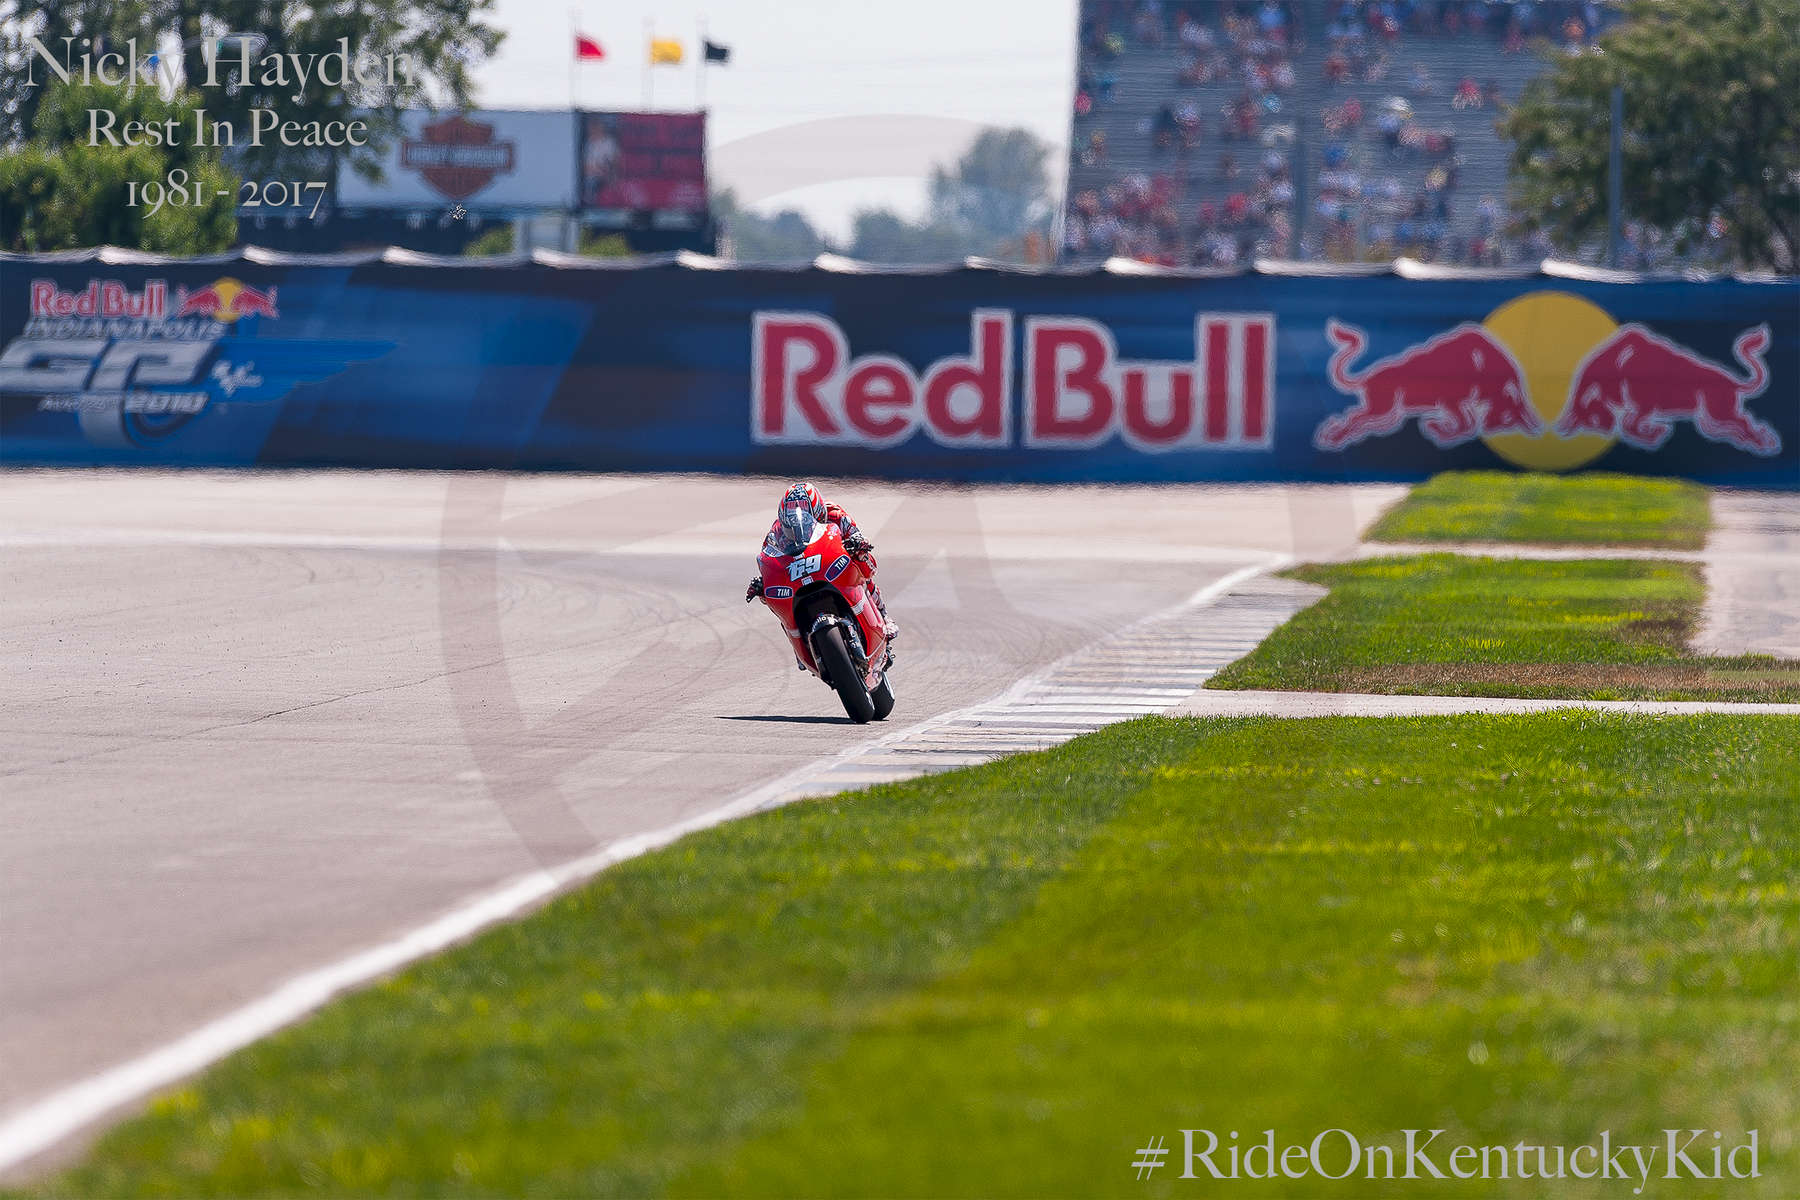 Nicky Hayden
{quote}Kentucky Kid{quote}
MotoGP Red Bull U.S. Grand Prix
#NickyHaydenRIP
#RideOnKentuckyKid
